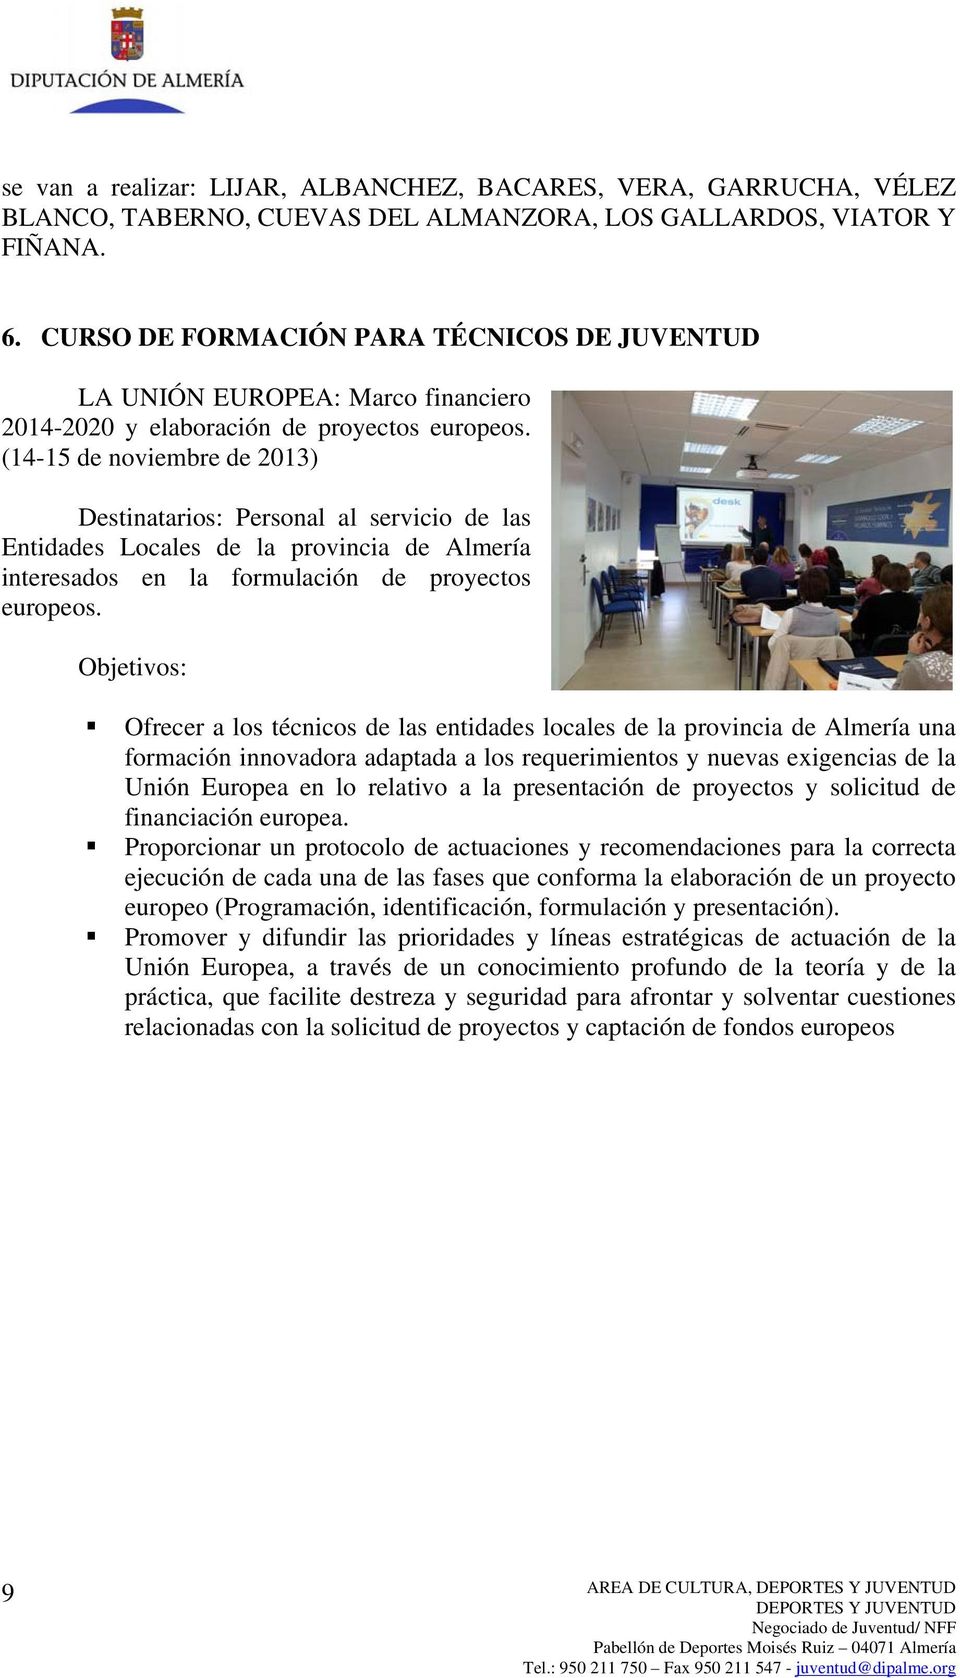 (14-15 de noviembre de 2013) Destinatarios: Personal al servicio de las Entidades Locales de la provincia de Almería interesados en la formulación de proyectos europeos.